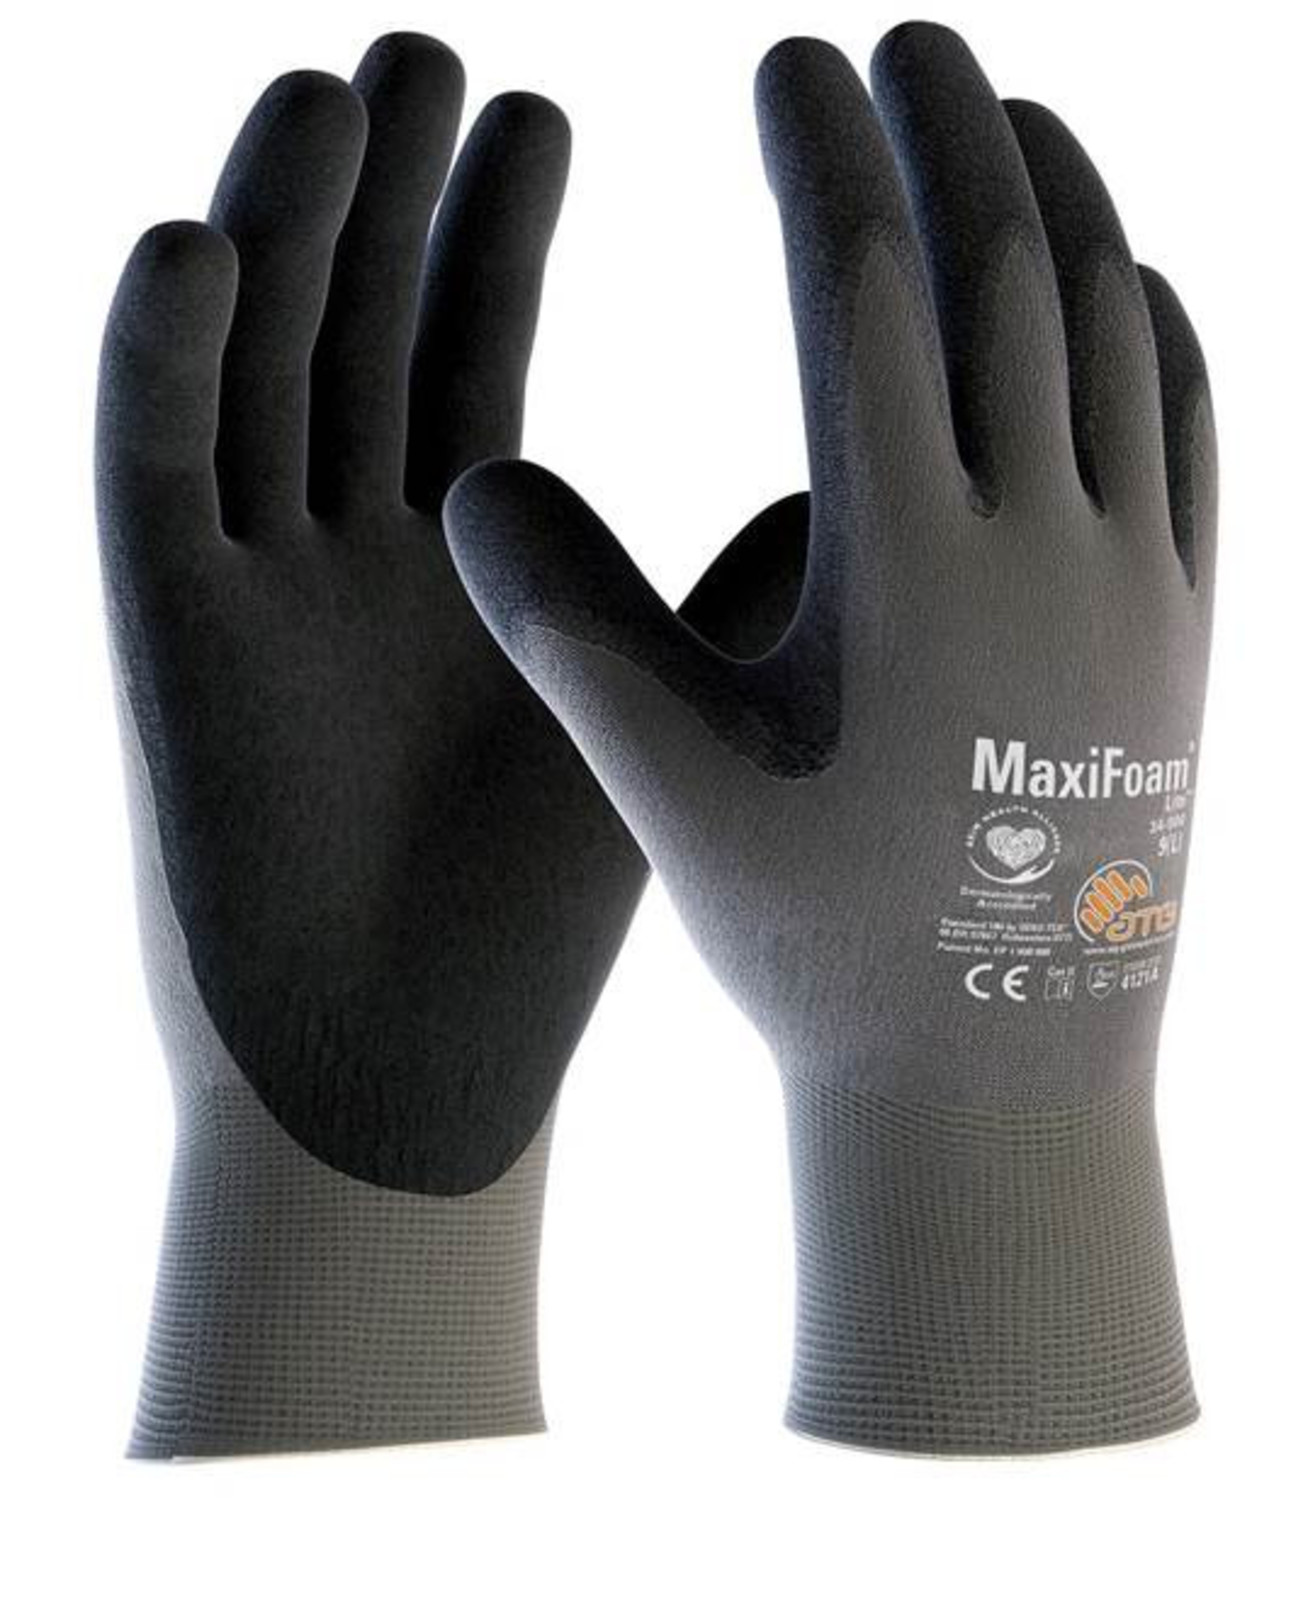 Pracovné rukavice ATG MaxiFoam LITE 34-900 - veľkosť: 8/M, farba: sivá